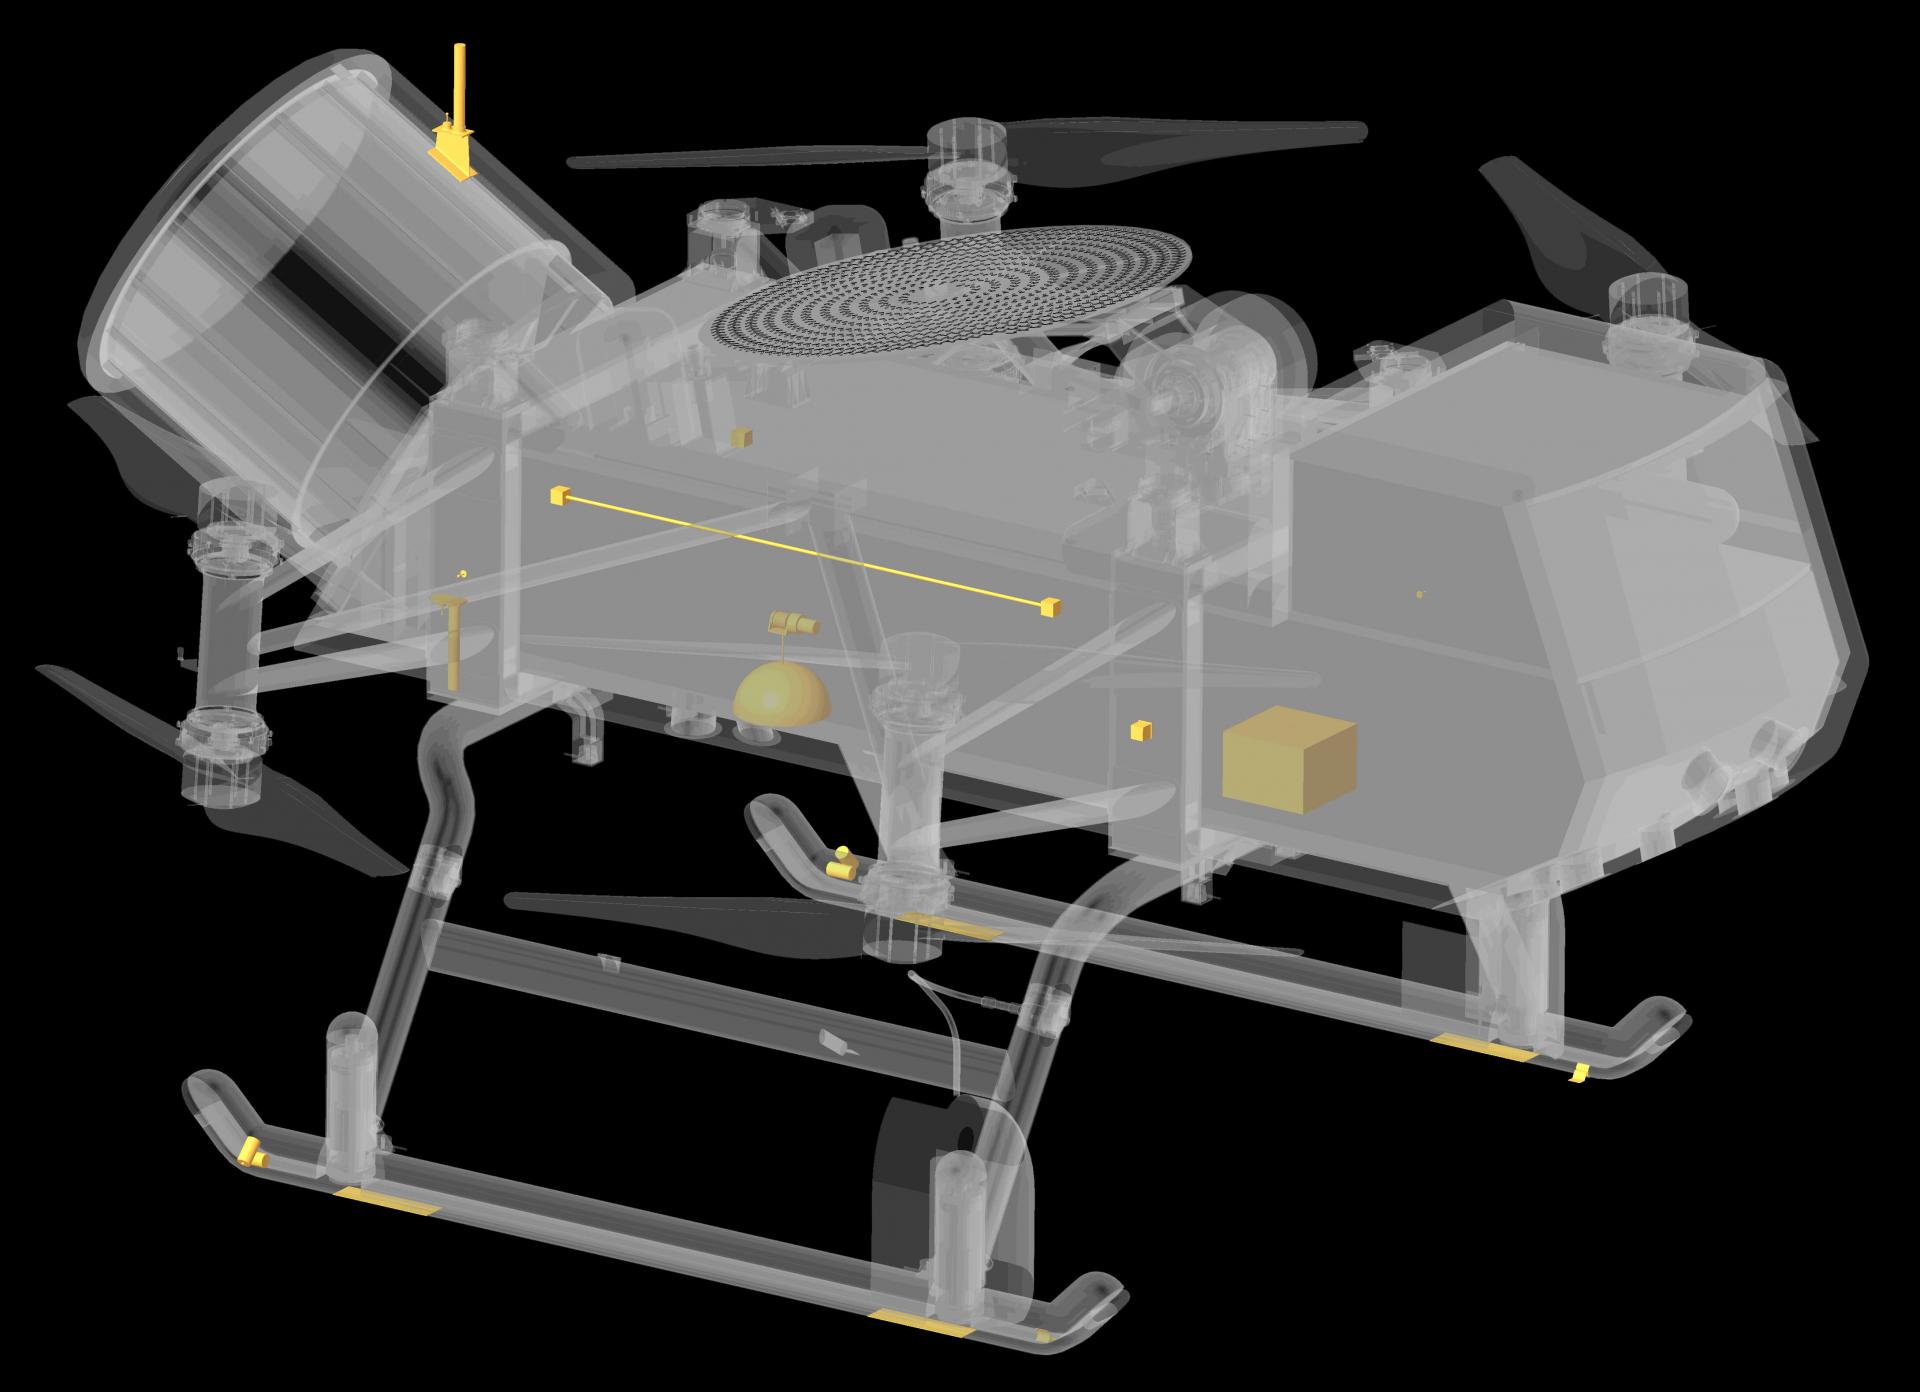 Schematic of the DraGMet Spacecraft